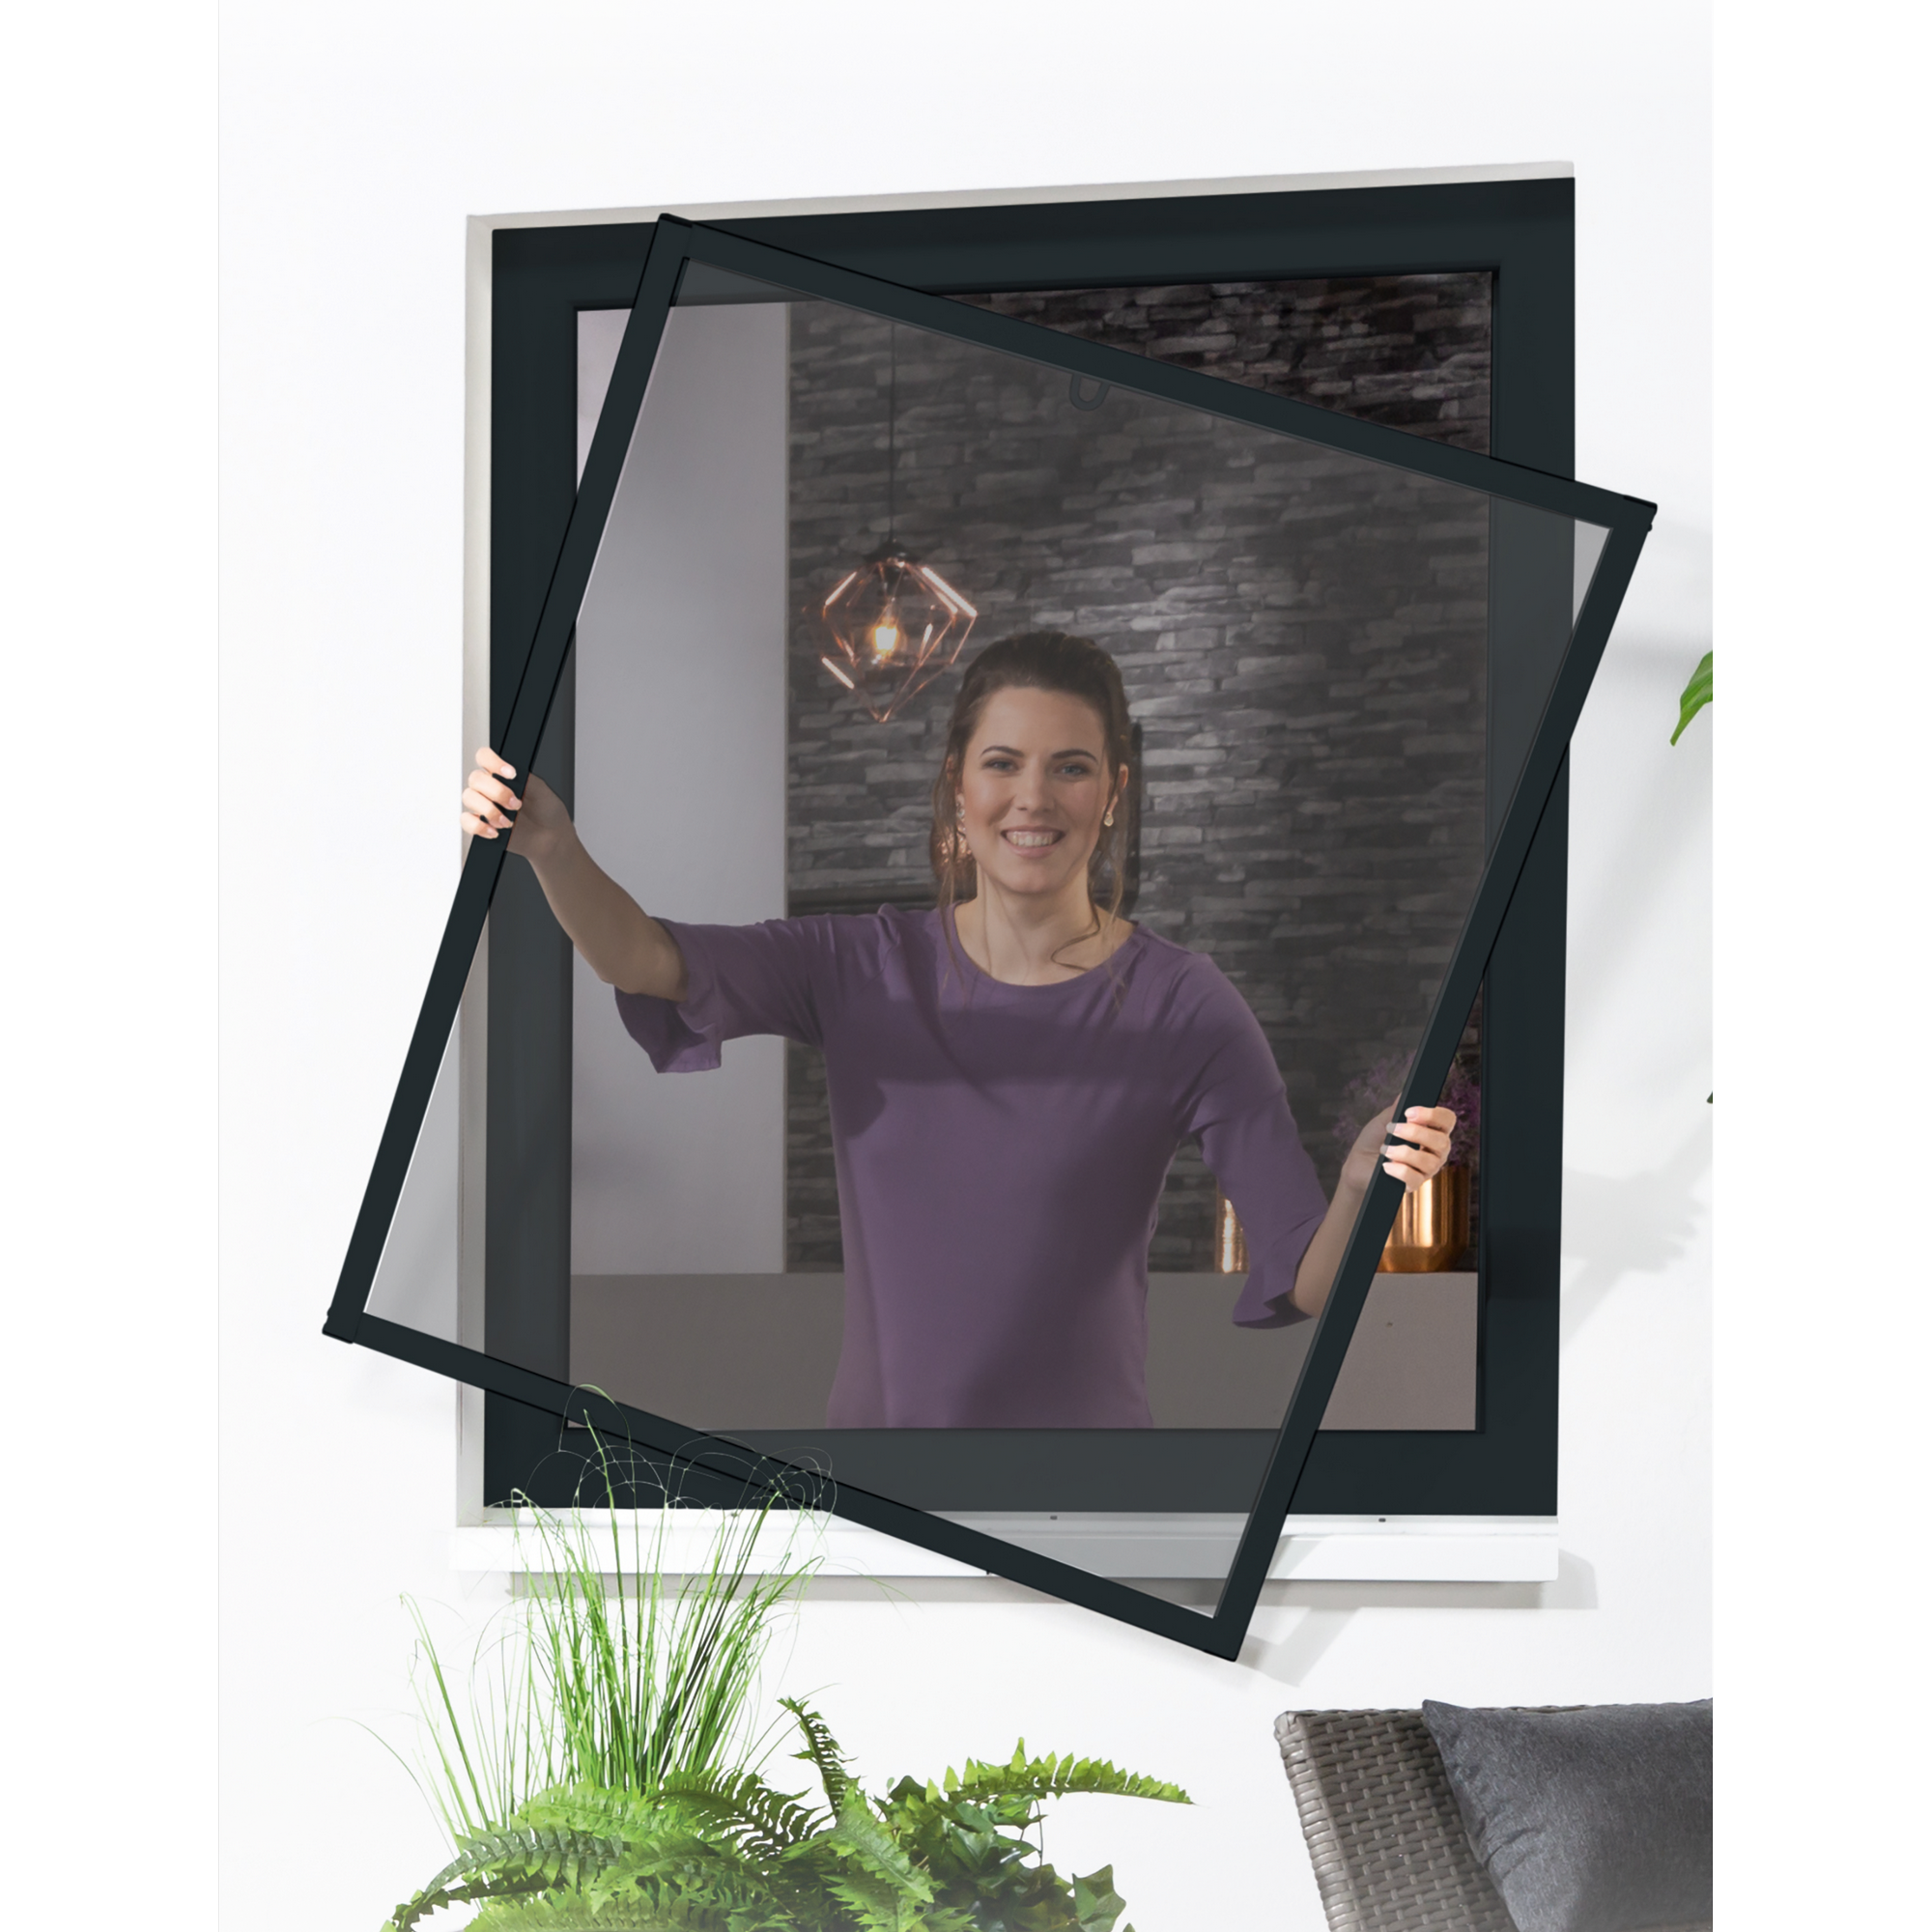 Pollenschutz-Bausatz für Fenster 'Master Slim' 130 x 150 cm anthrazit + product picture